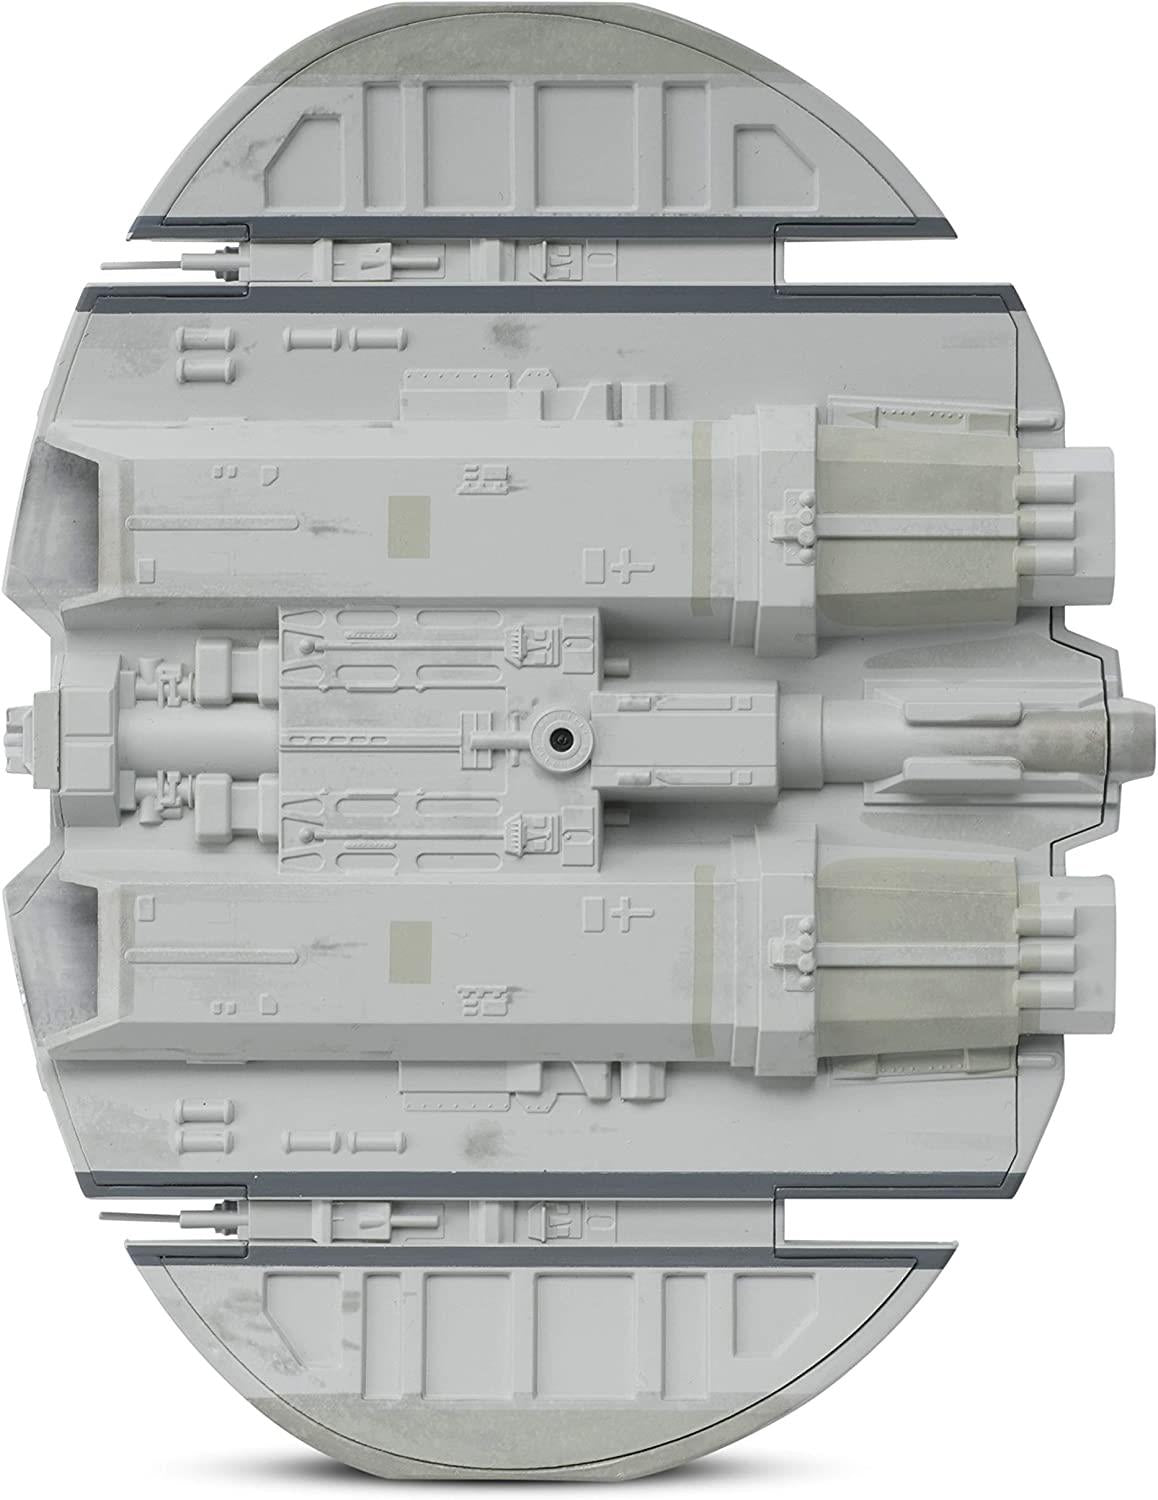 Figurine classique Cylon Raider BGSUK009 (Battlestar Galactica : la collection officielle des navires